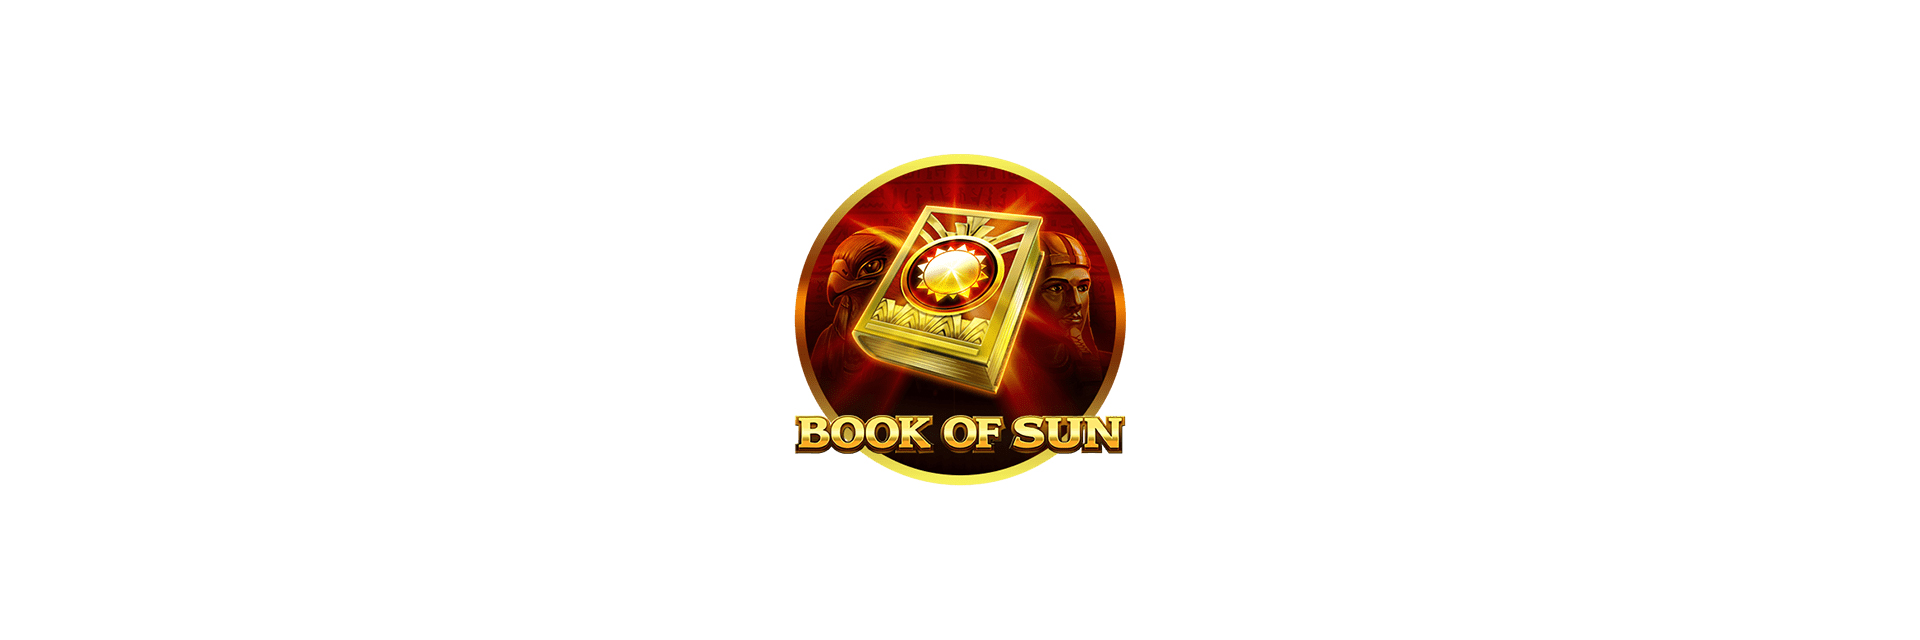 Book of sun slot logo.